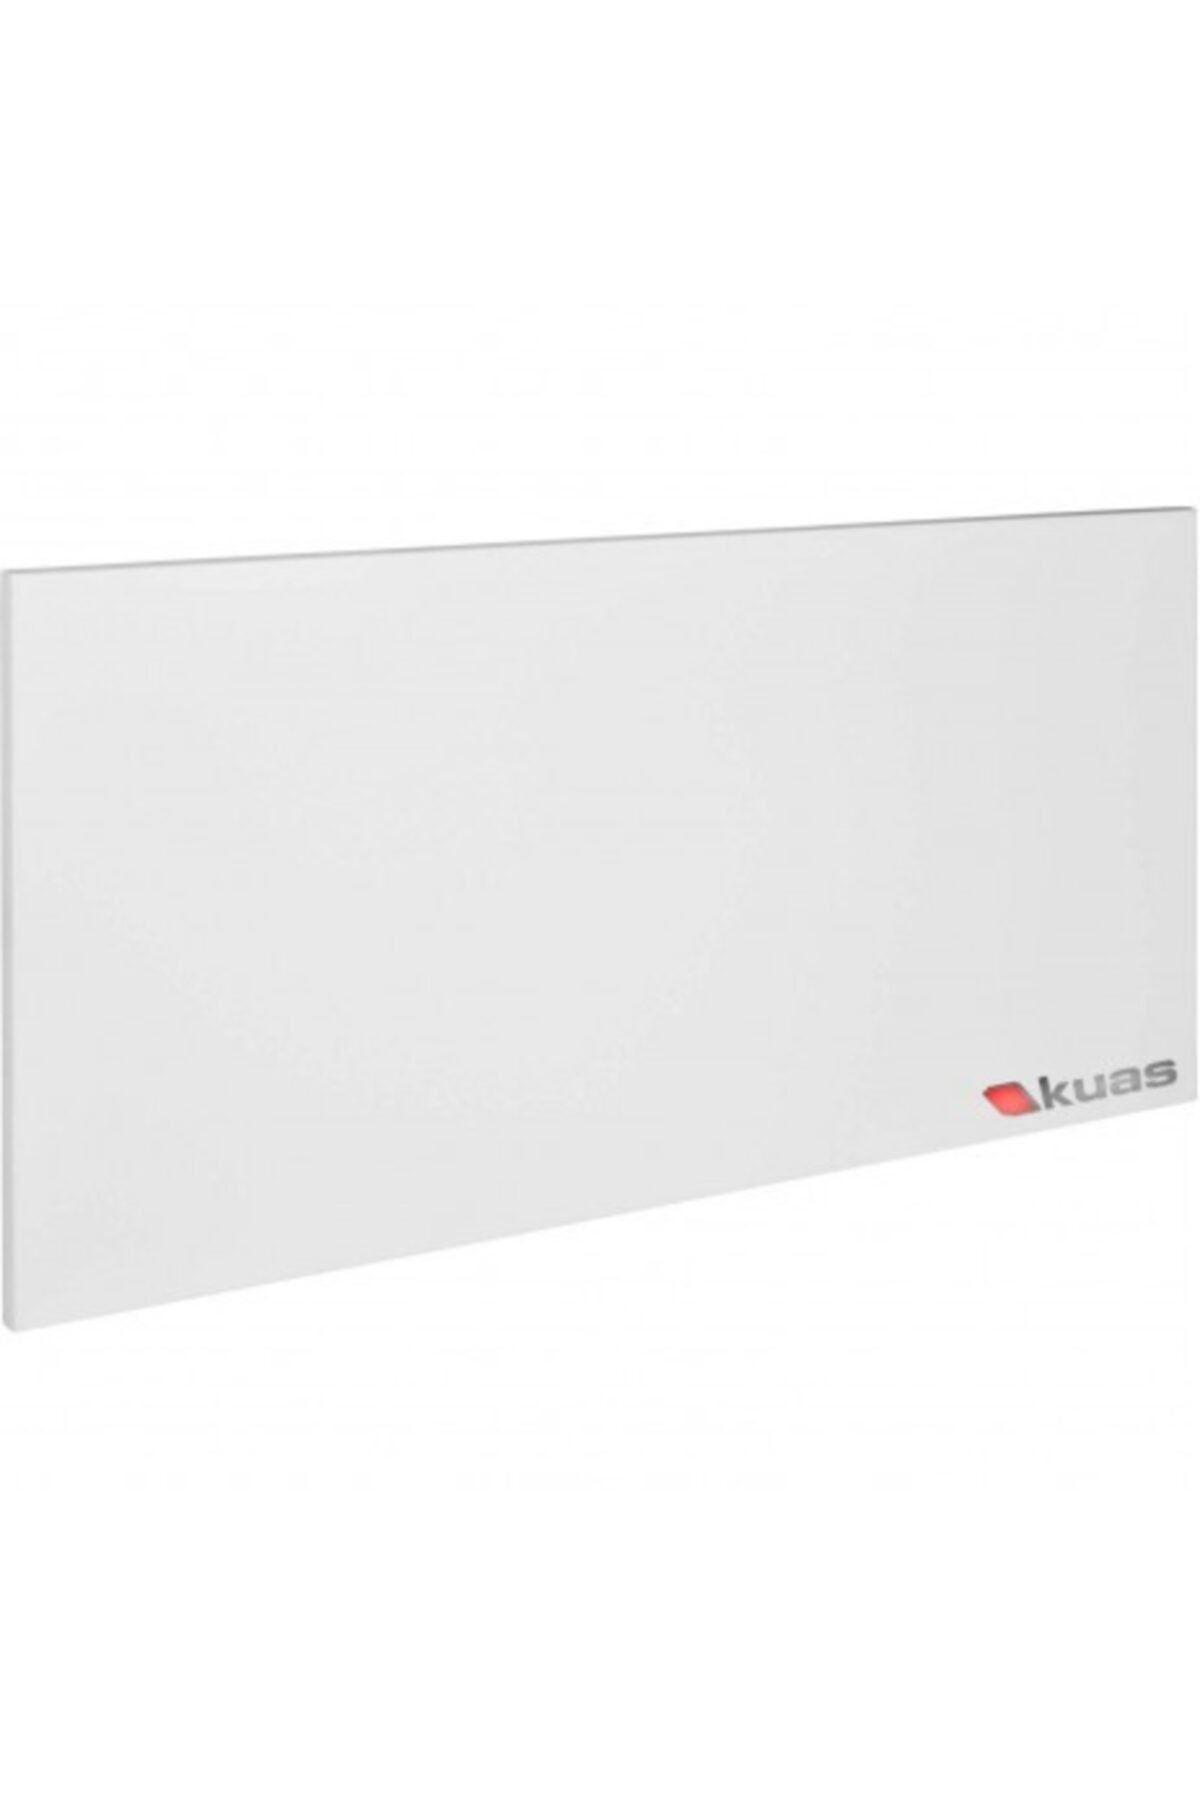 KUAS Metal Panel Infrared Isıtıcı Isp 900 Watt (1200x600x25)